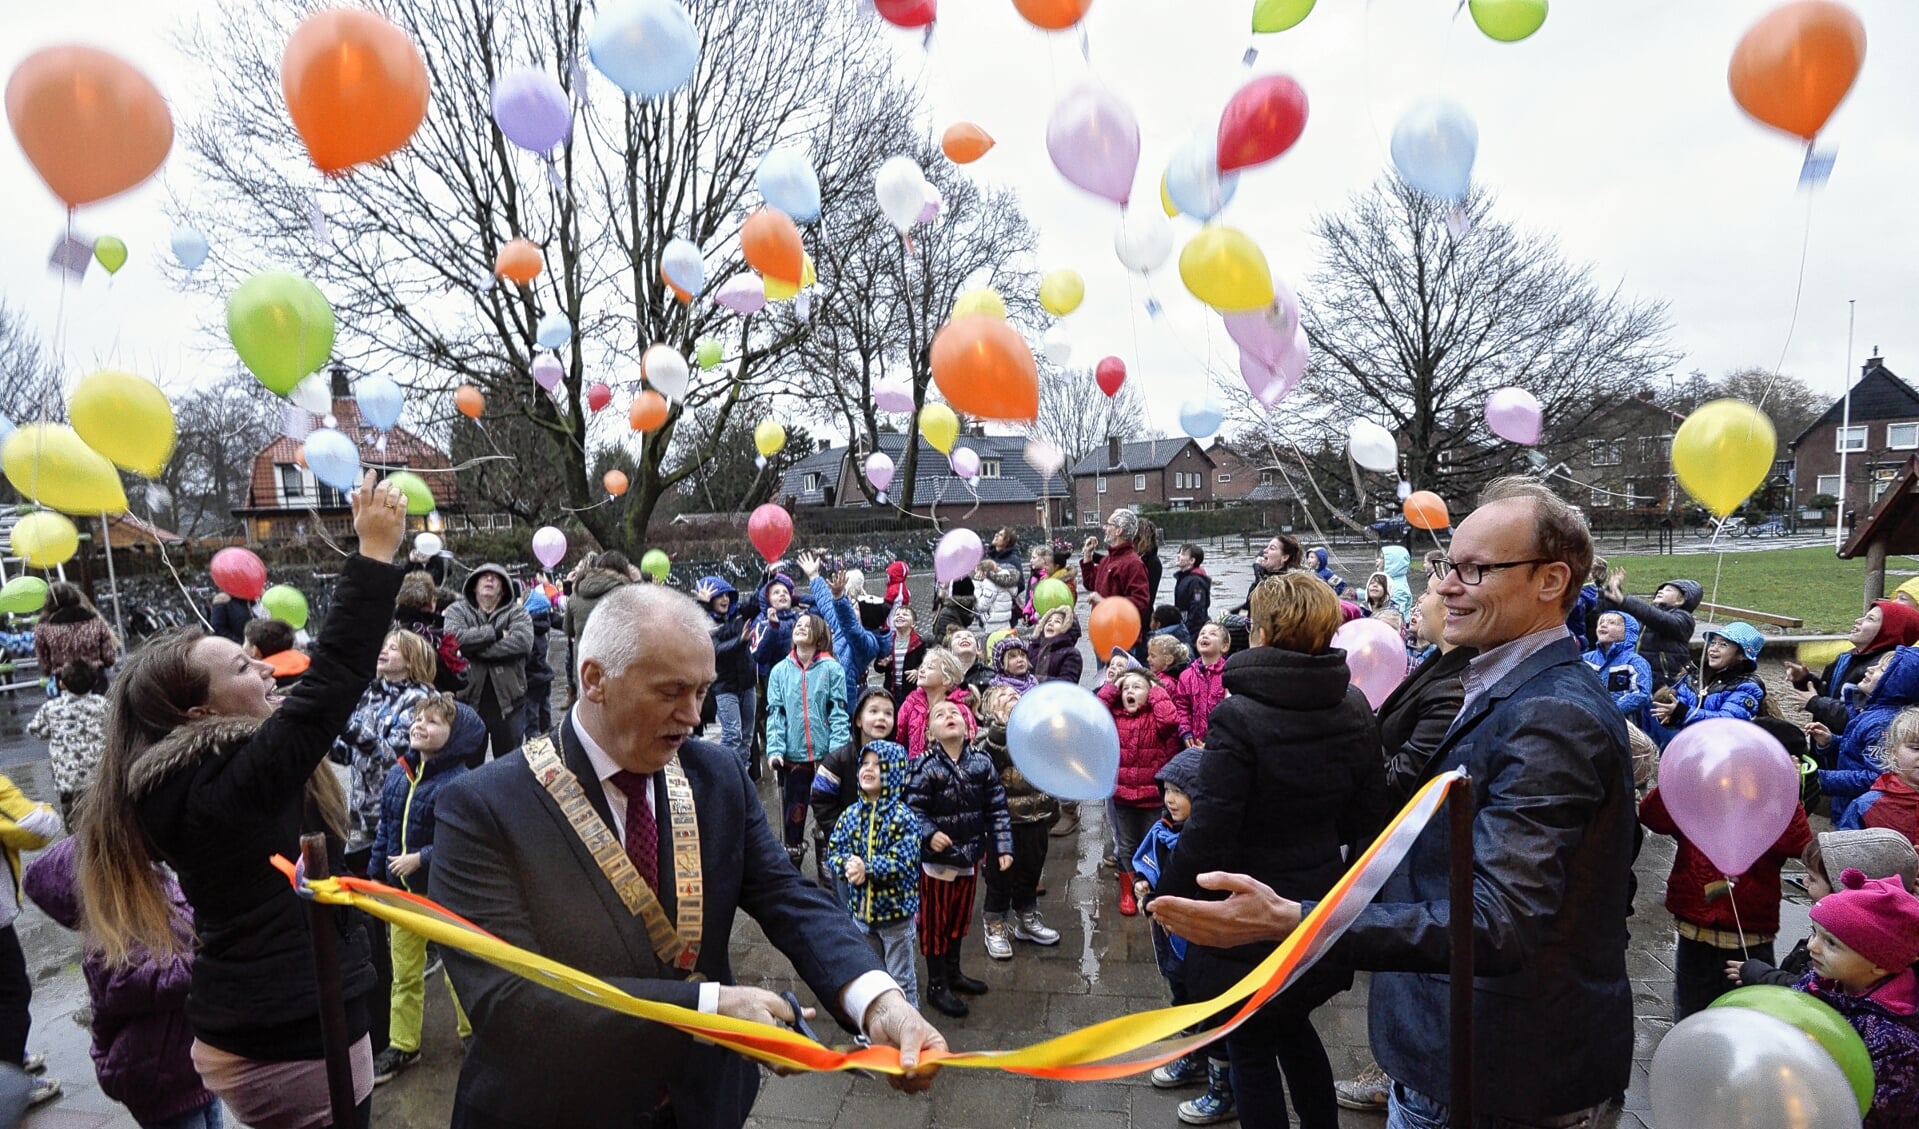 Bij de feestelijke heropening van basisschool De Regenboog in Voorthuizen, begin 2015, werden ballonnen opgelaten. Dat fenomeen verdwijnt door een nieuw verbod. 